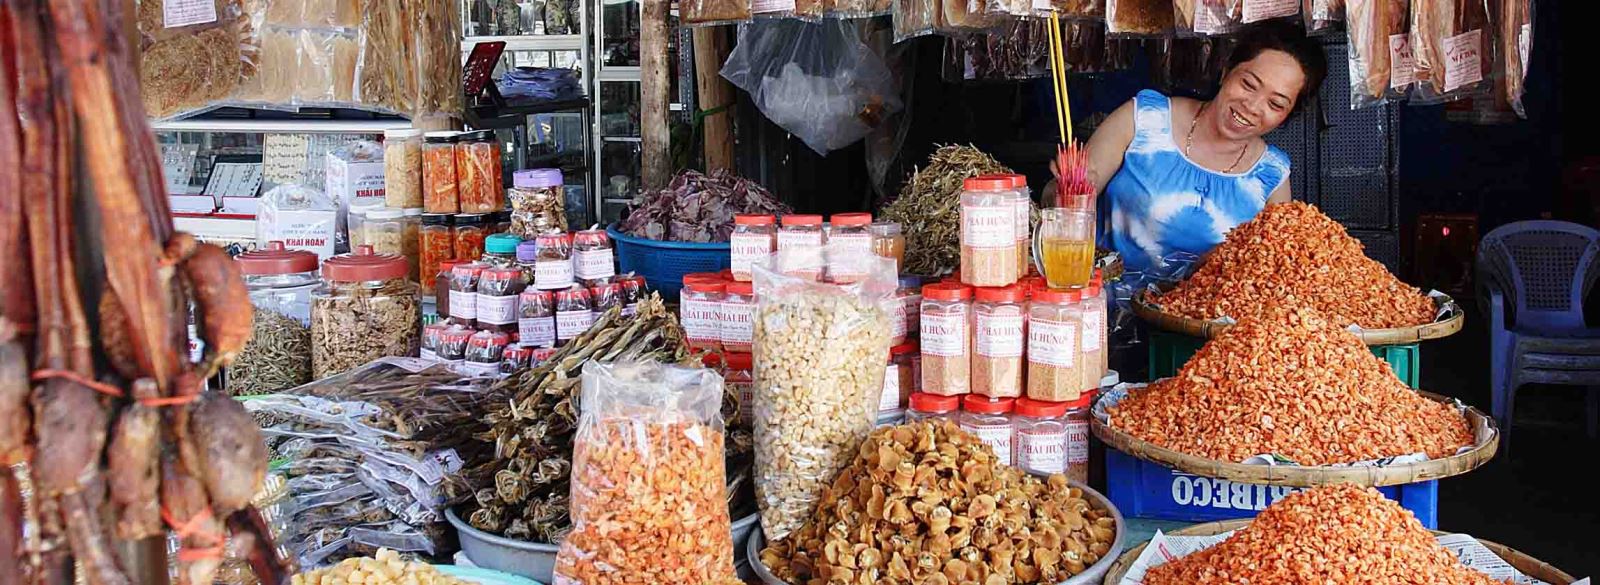 Le marché Ben Thanh